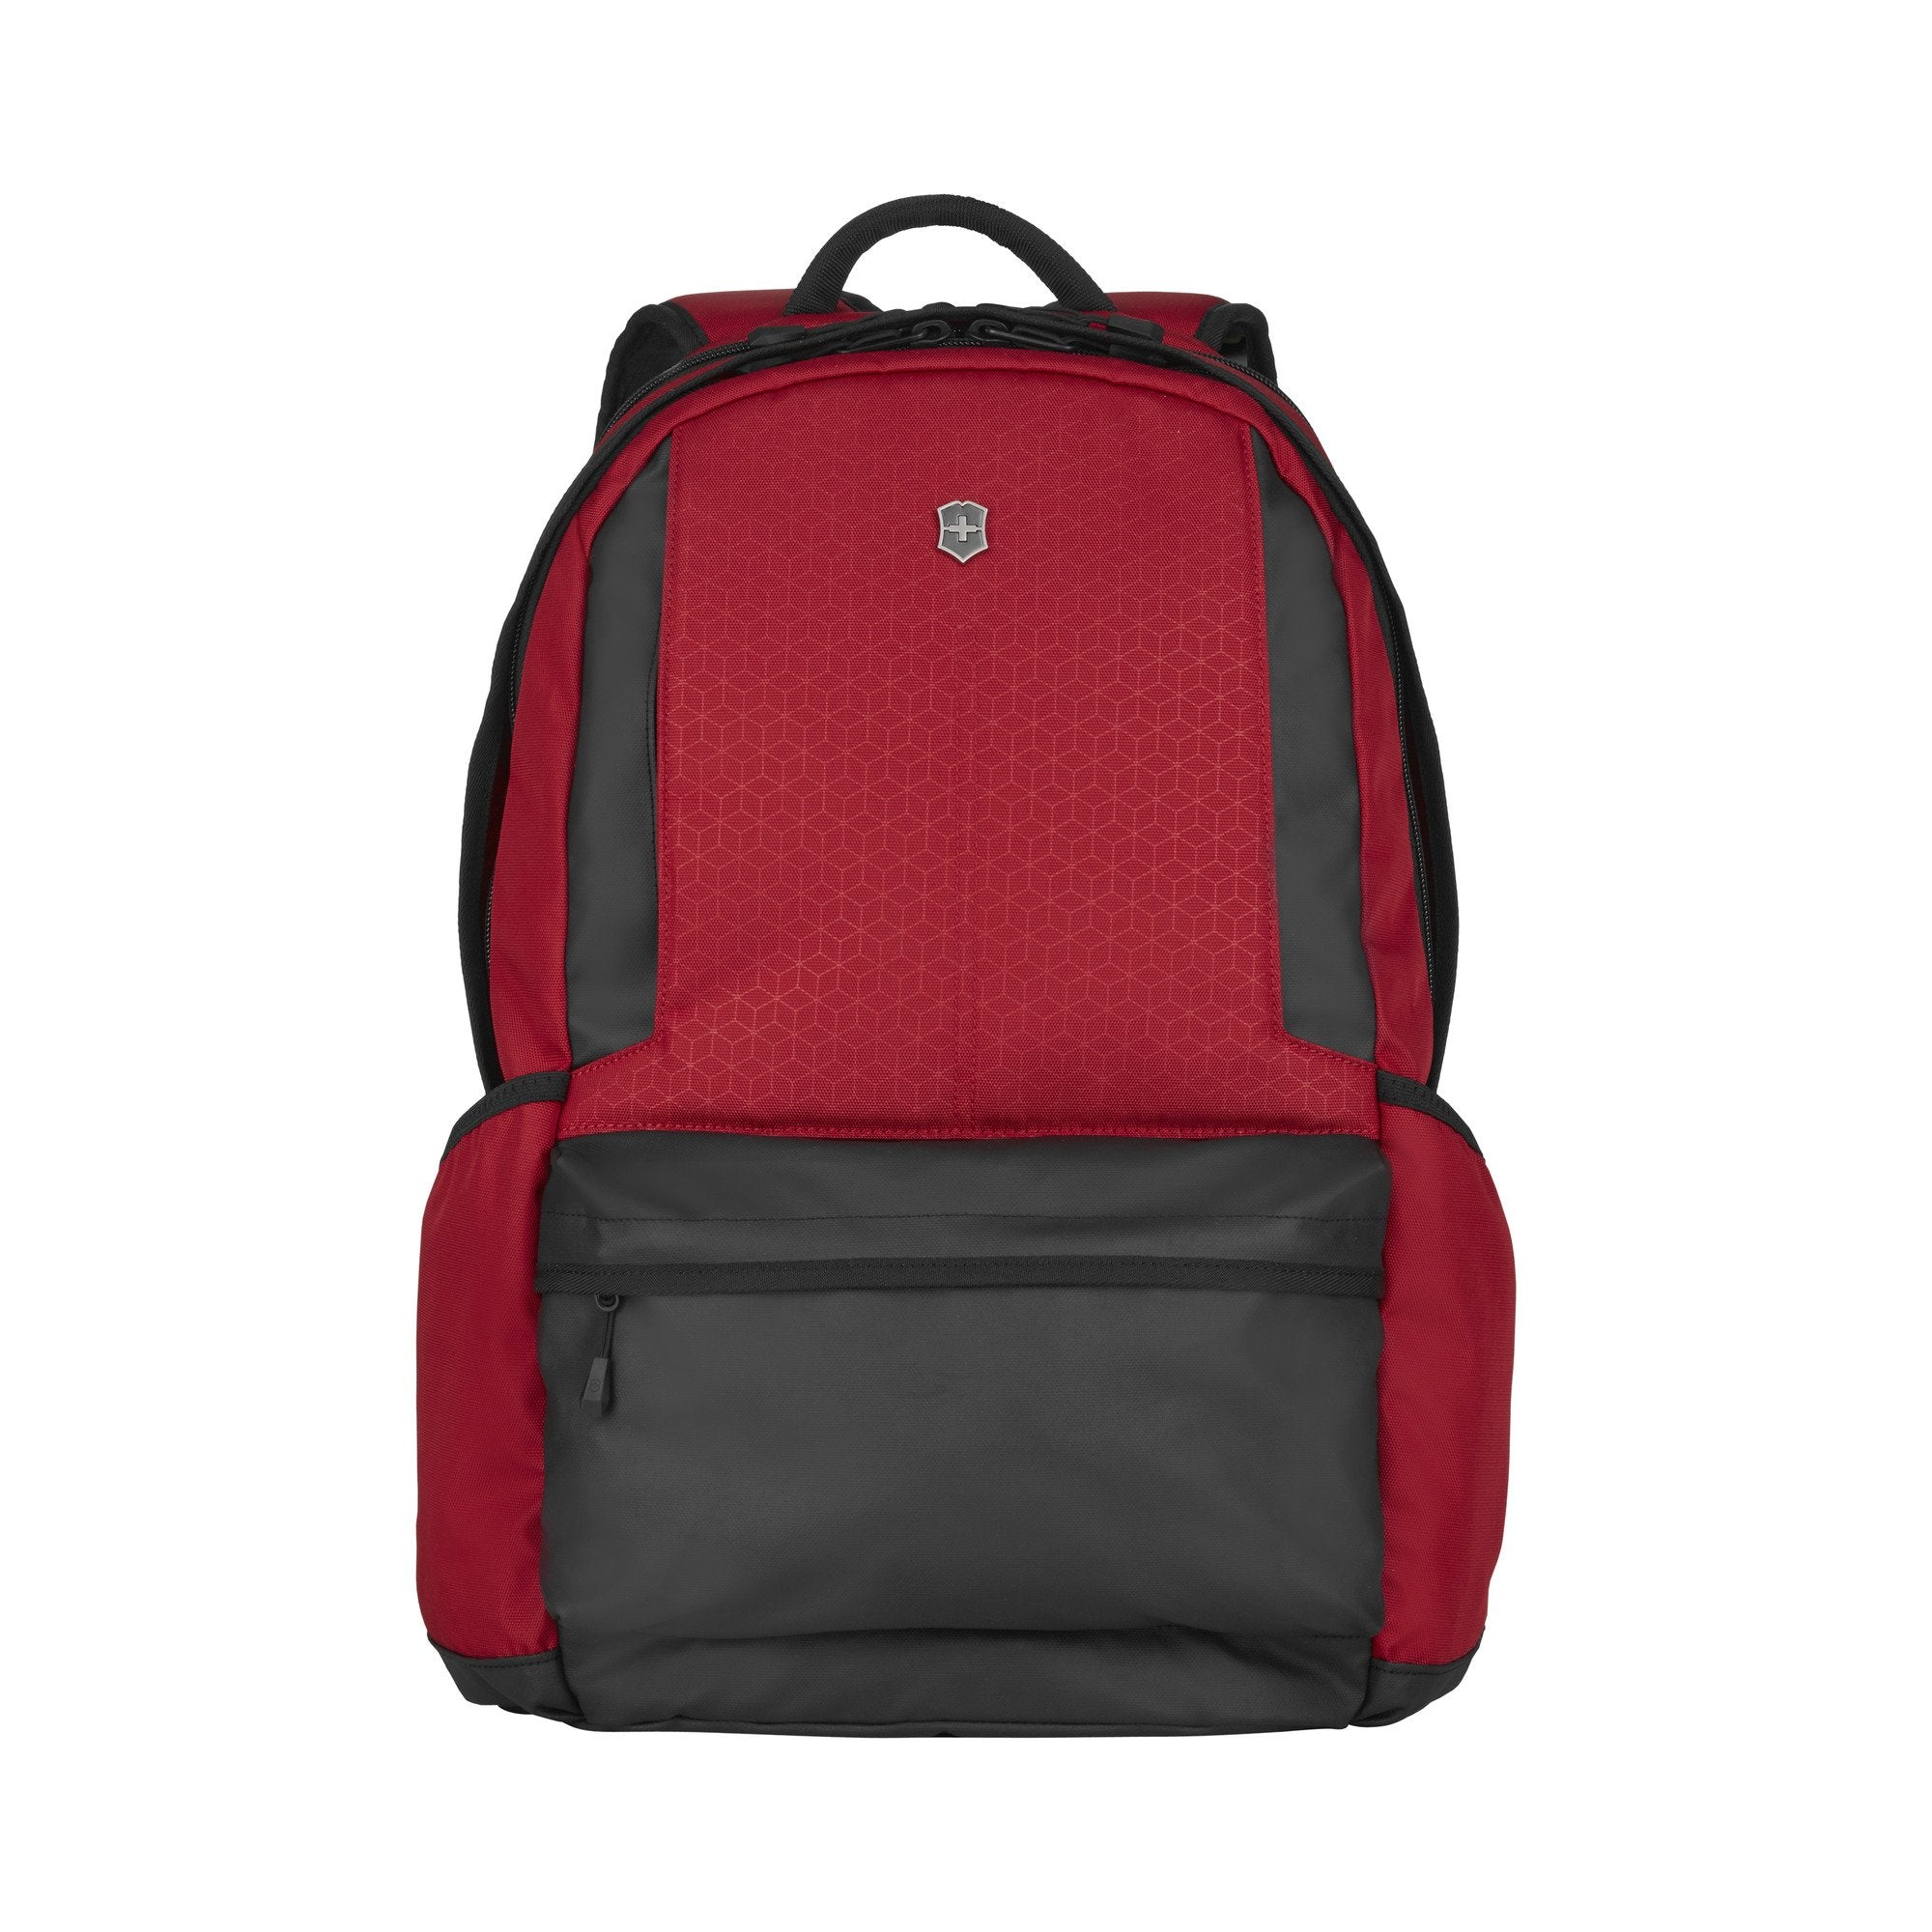 VICTORINOX Altmont Original Laptop Backpack (Red) - bag scene Hornsby